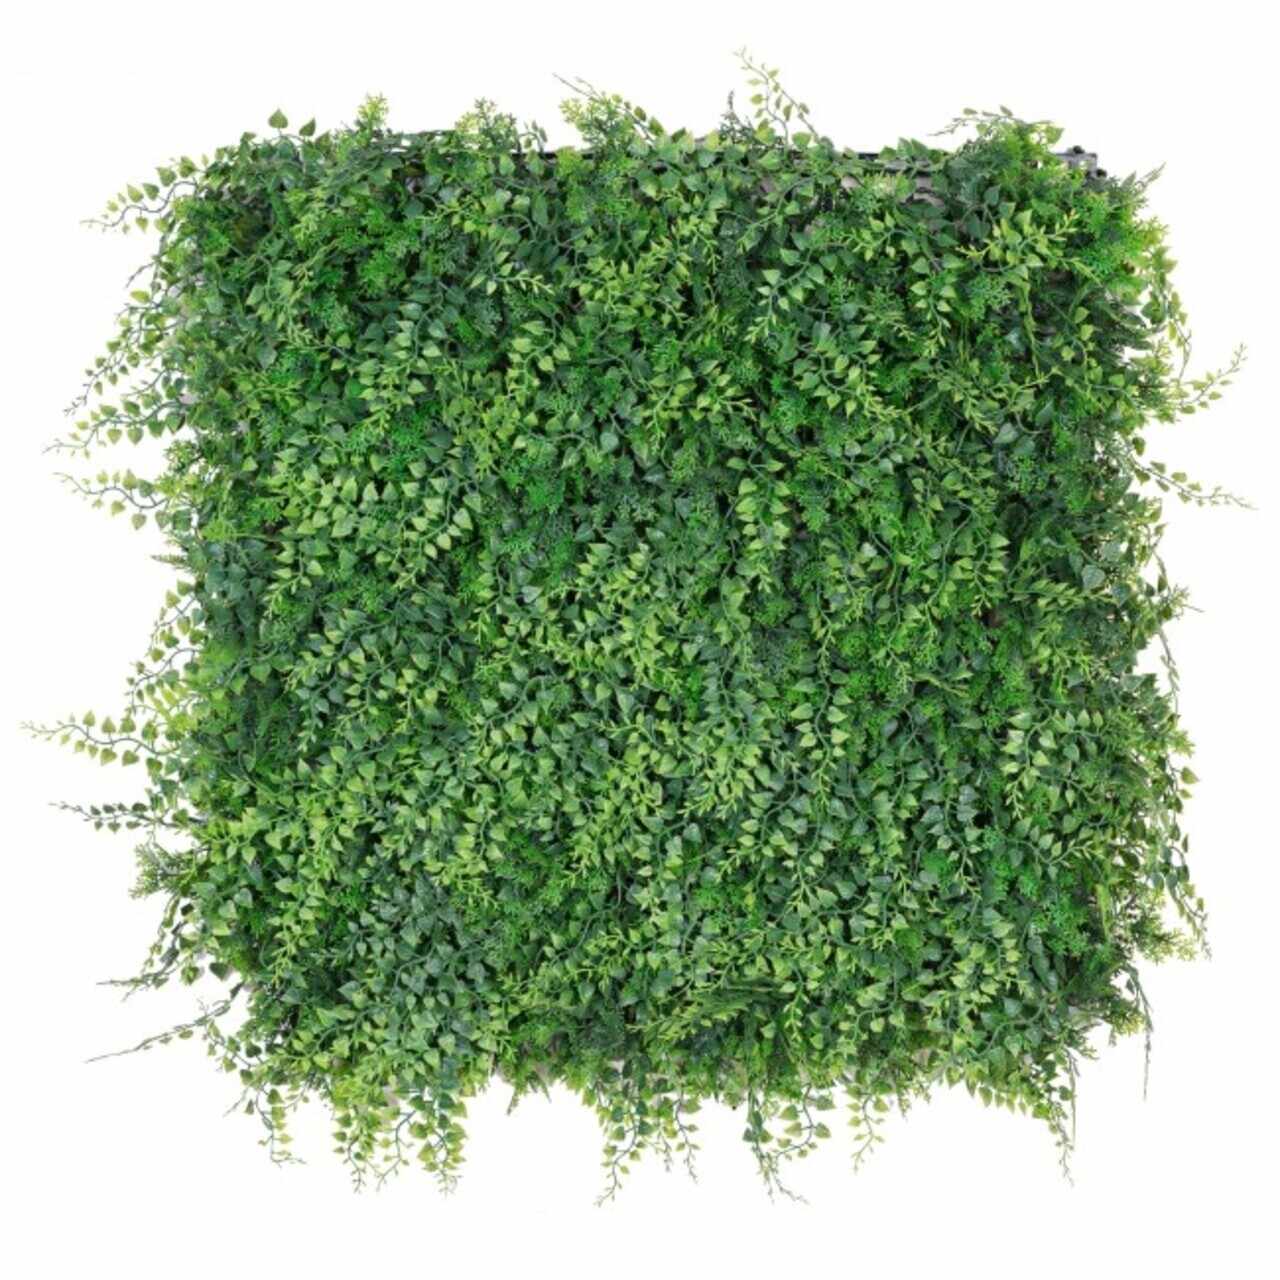 Panou verde artificial / gradina verticala artificiala Mix Green, Bizzotto, 50x50 cm